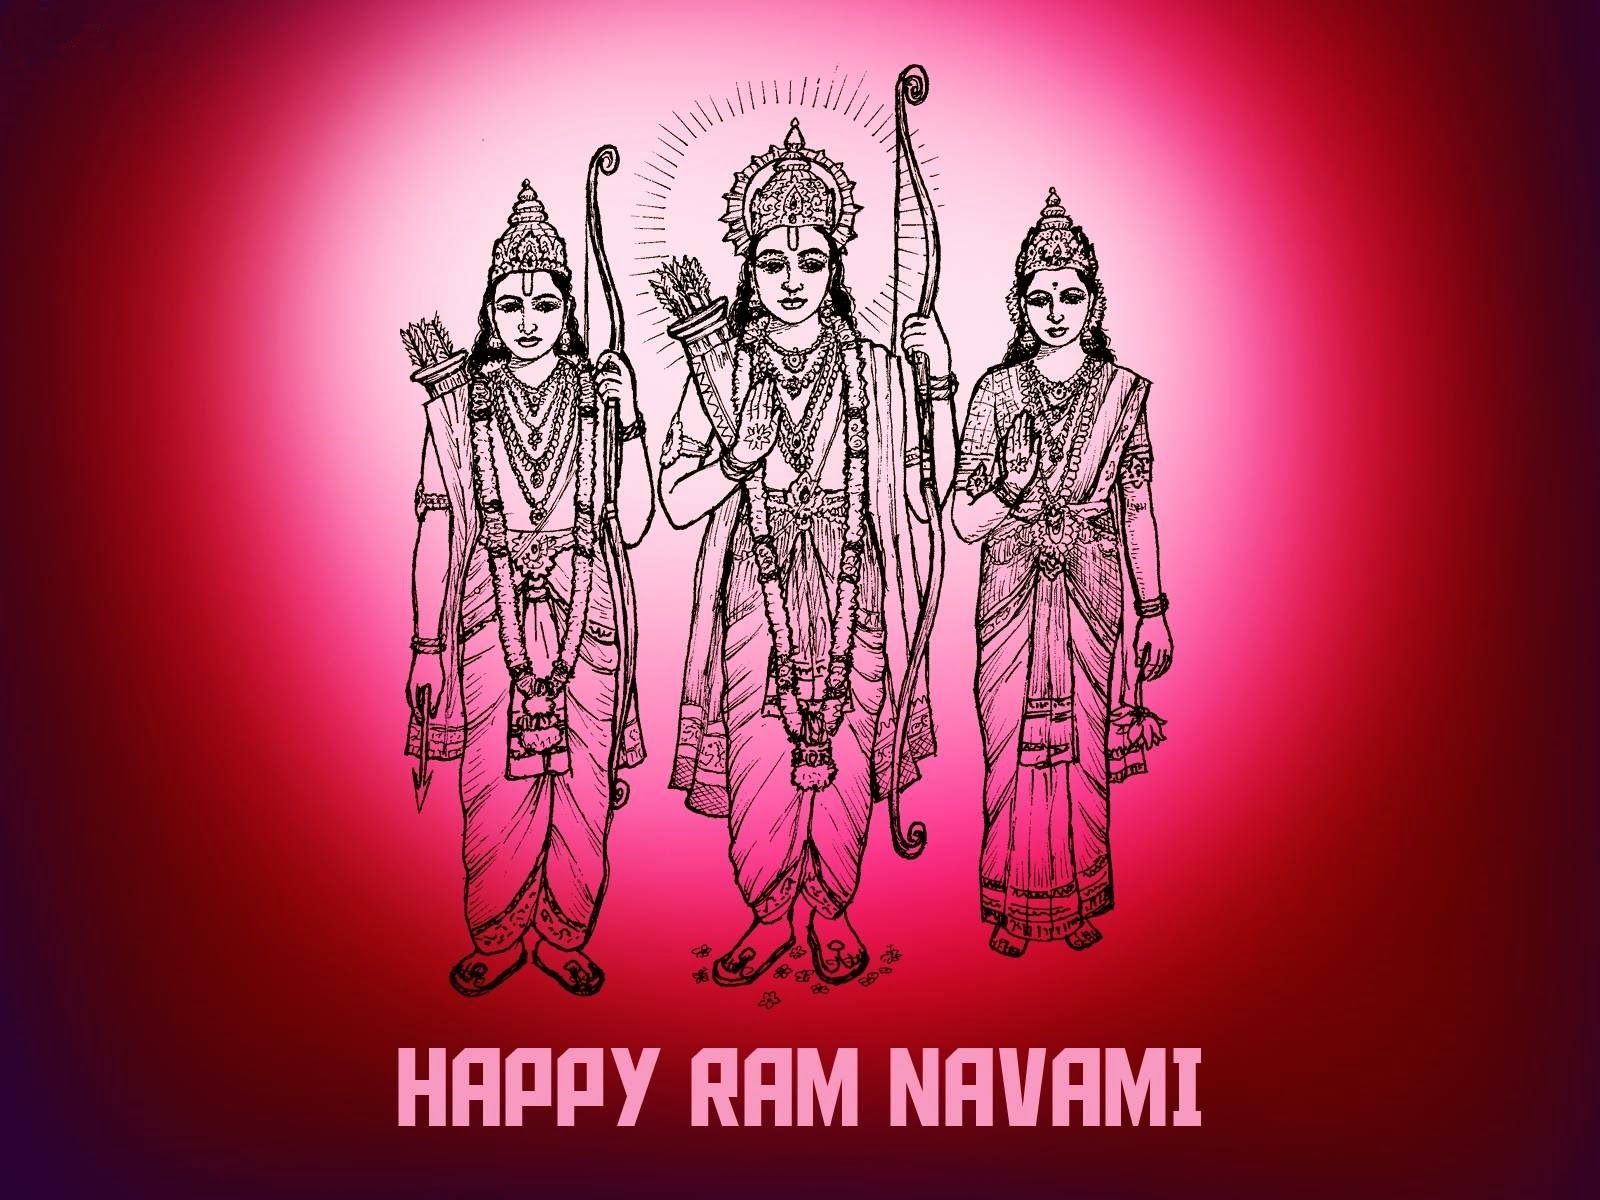 Download Free HD Wallpaper of Shree ram/ ramji. Bhagwan Ram